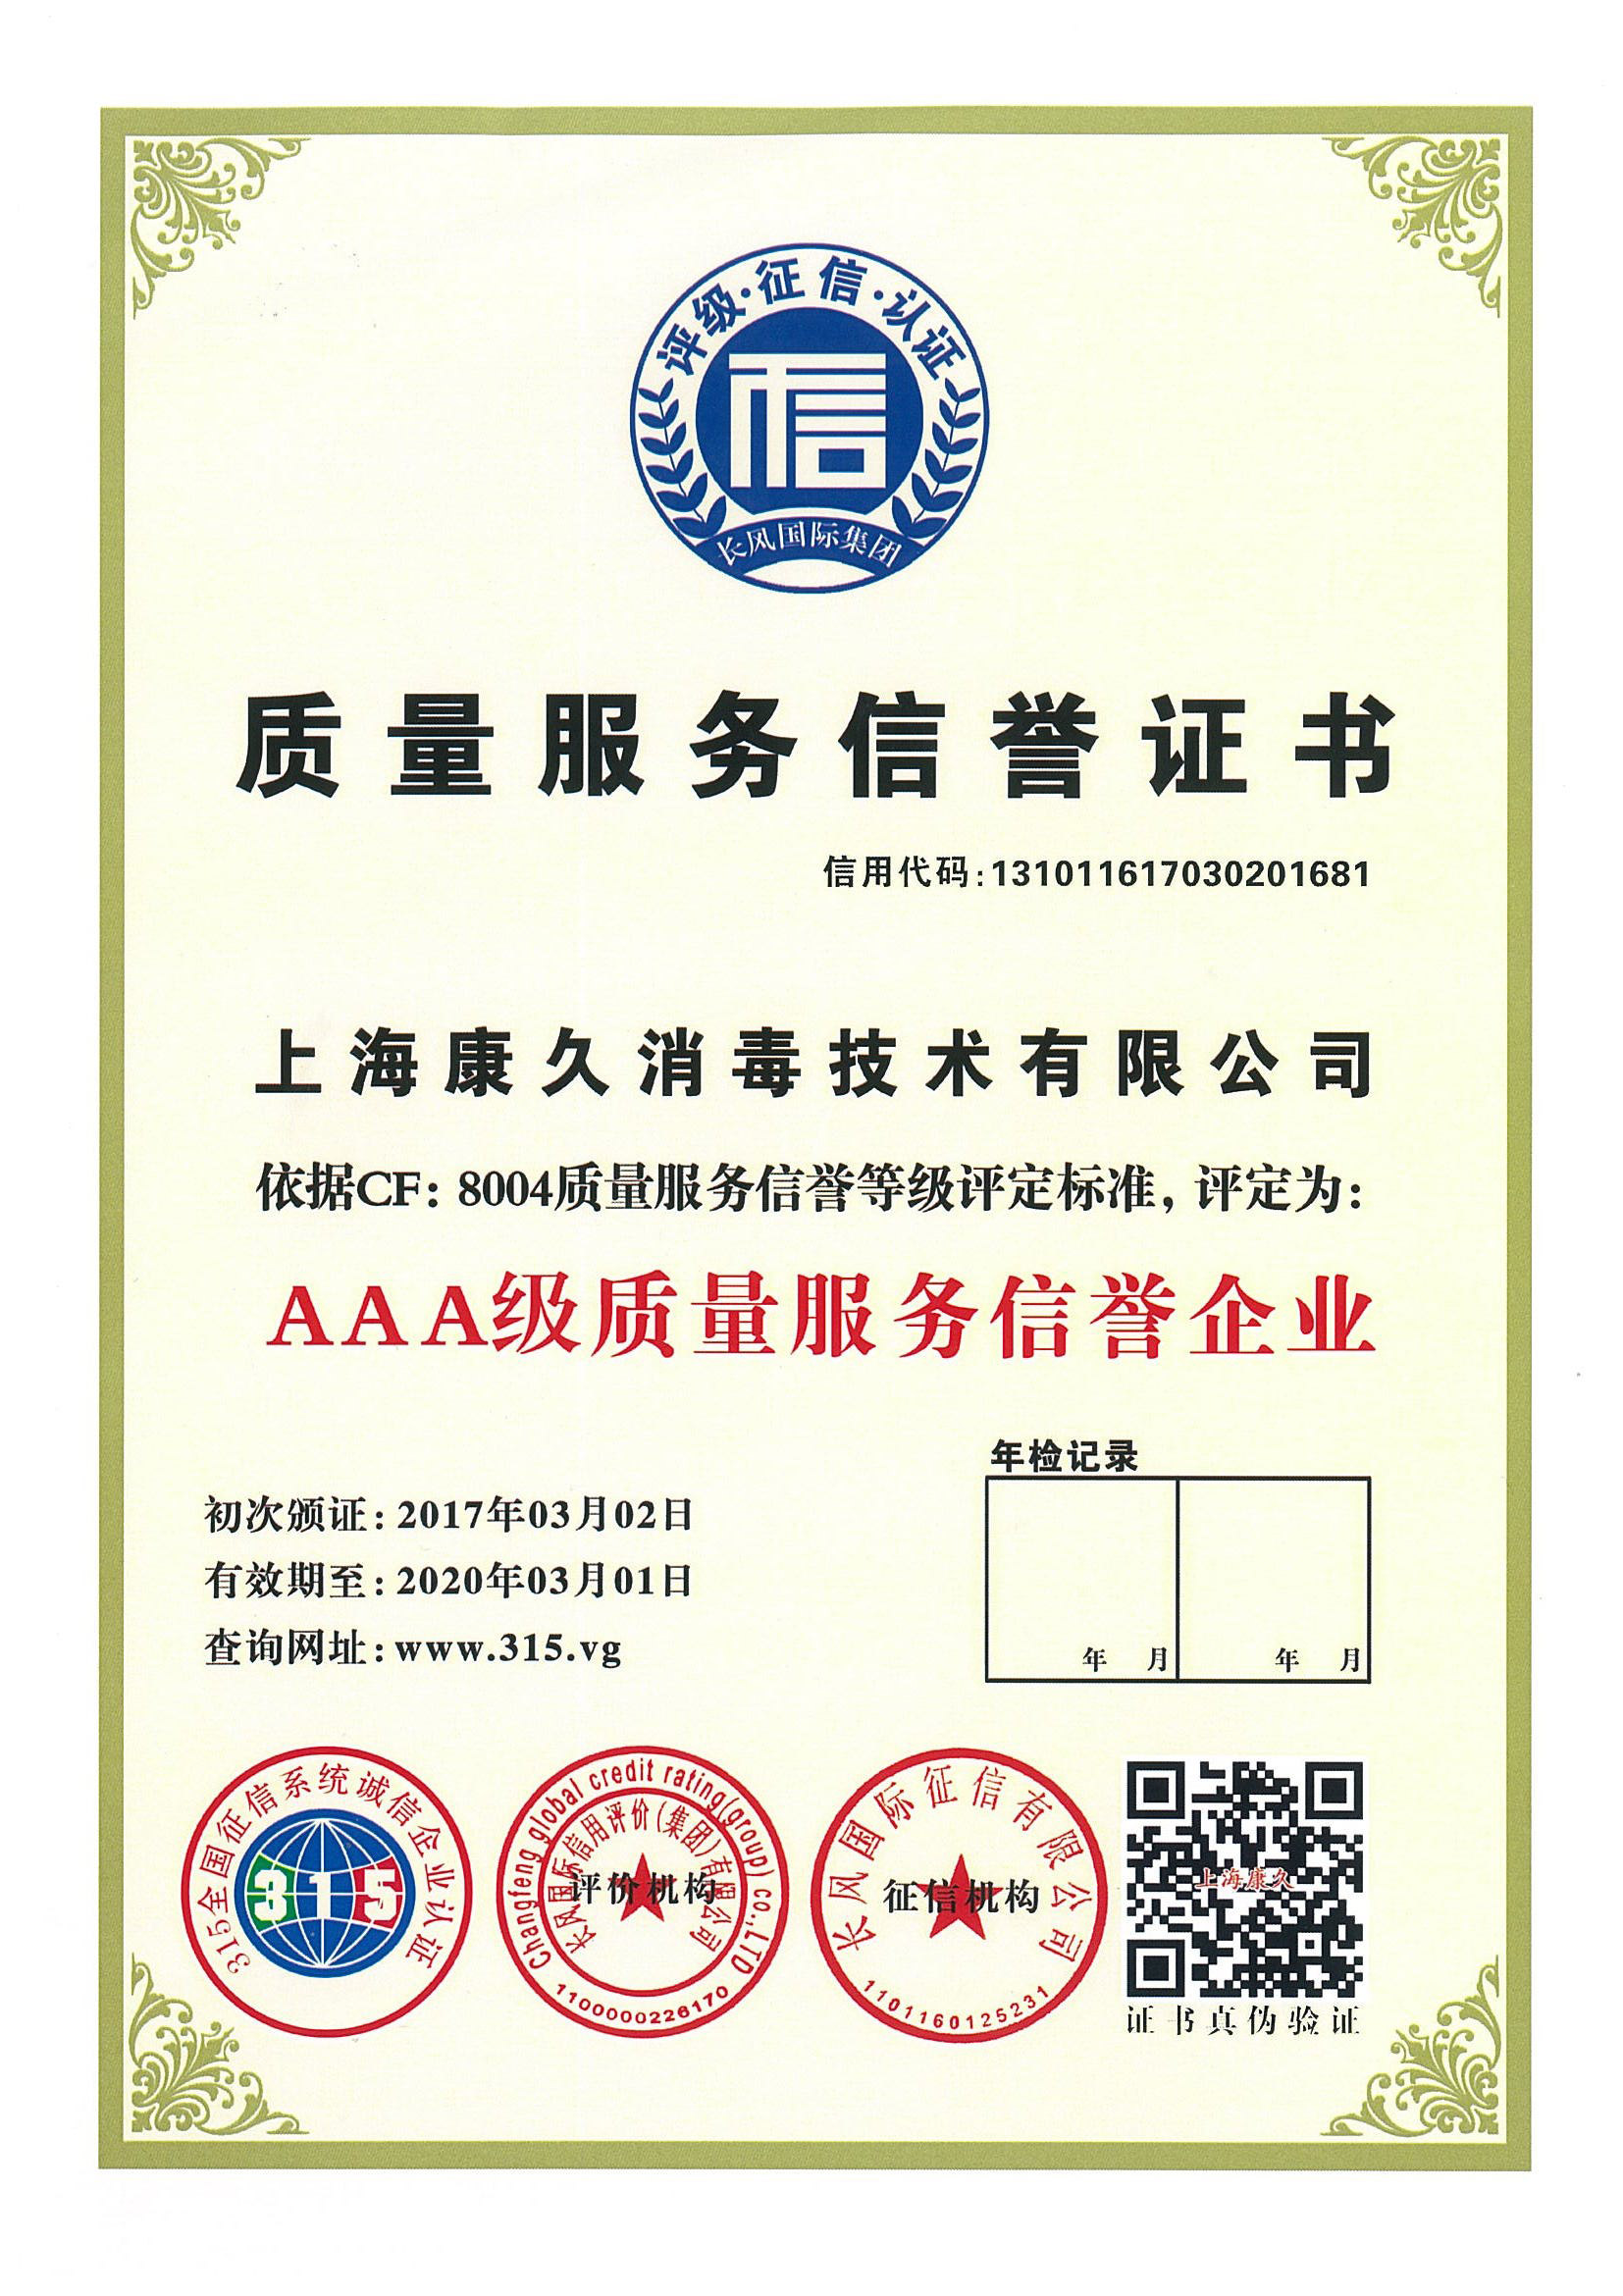 “滨州质量服务信誉证书